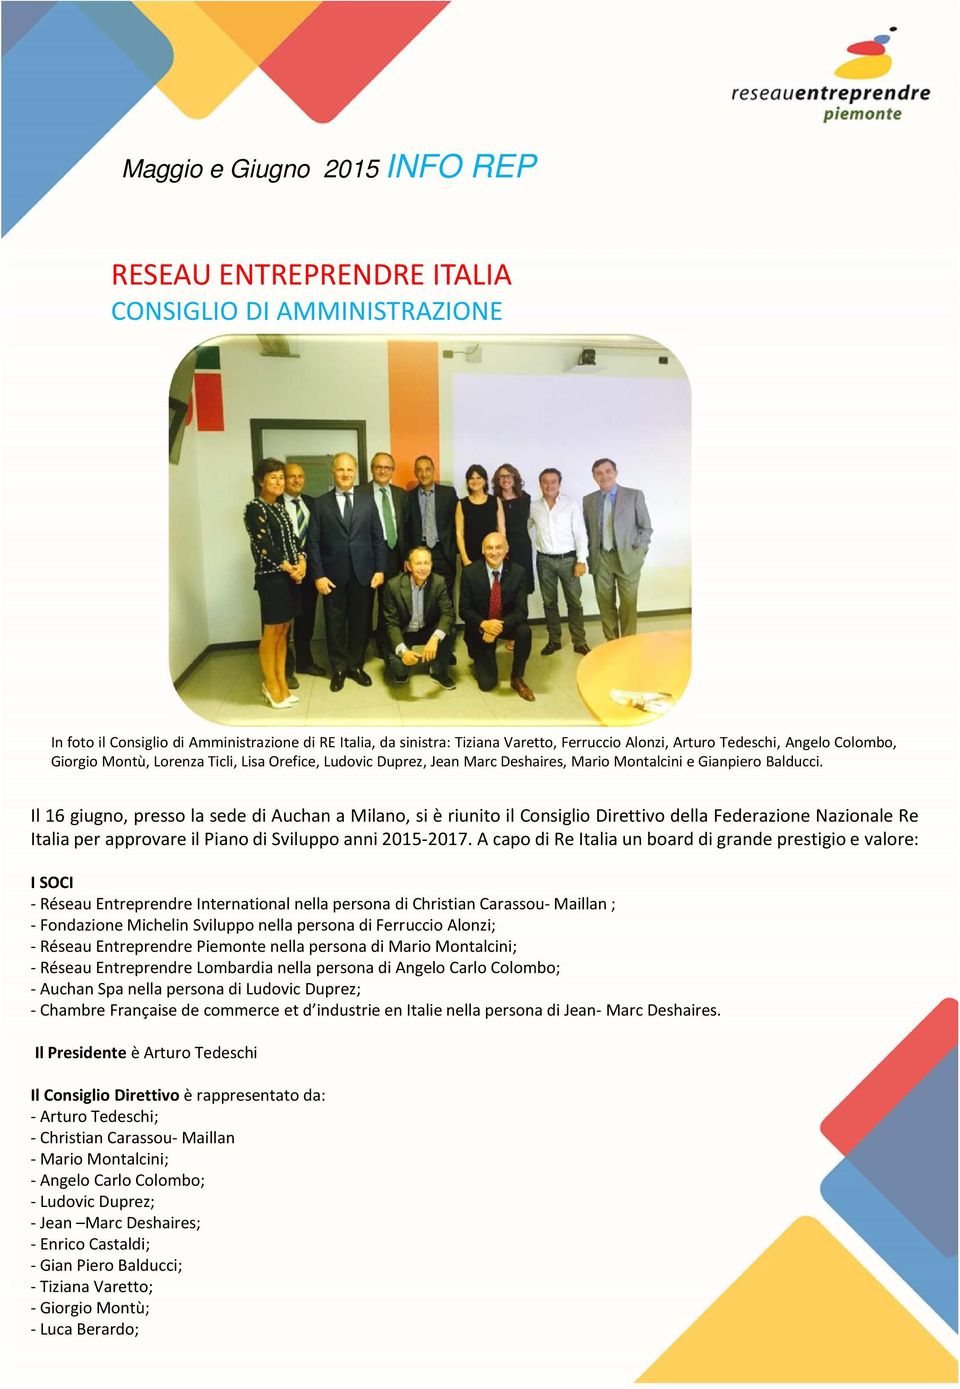 Il 16 giugno, presso la sede di Auchan a Milano, si è riunito il Consiglio Direttivo della Federazione Nazionale Re ItaliaperapprovareilPianodiSviluppoanni2015-2017.